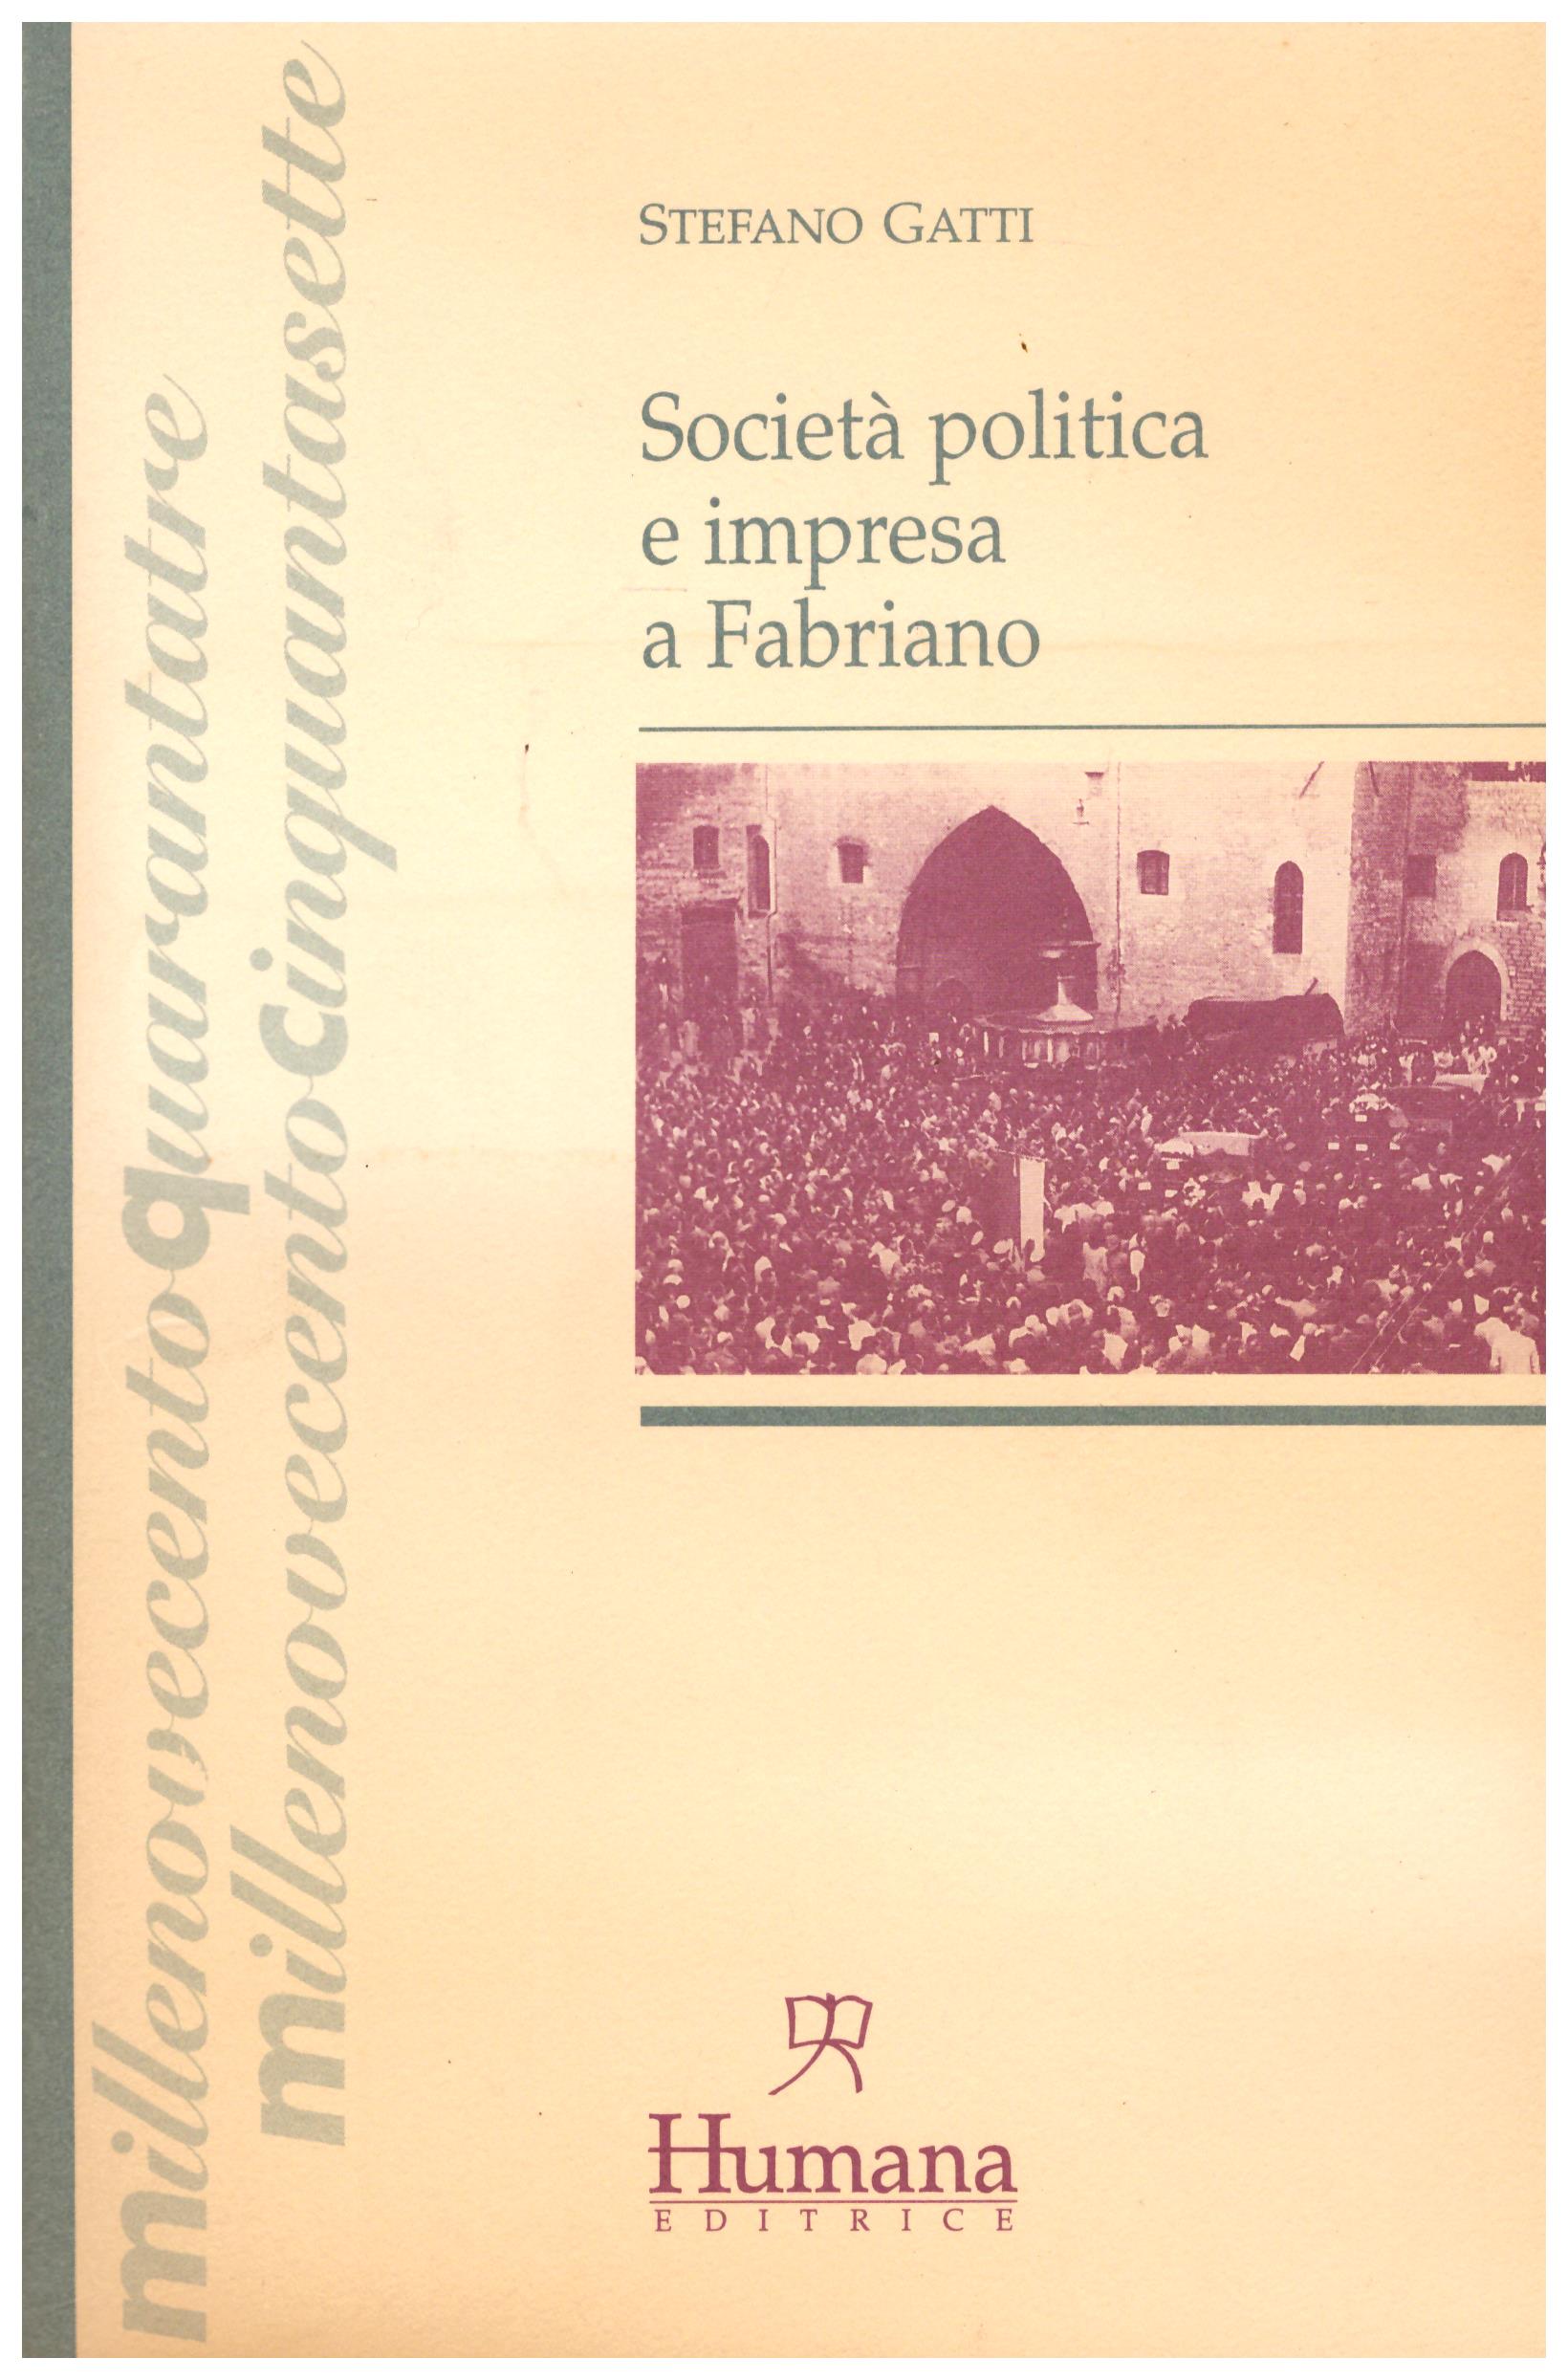 Titolo: Società politica  e impresa  a Fabriano  Autore : Stefano Gatti Editore: humana 1995